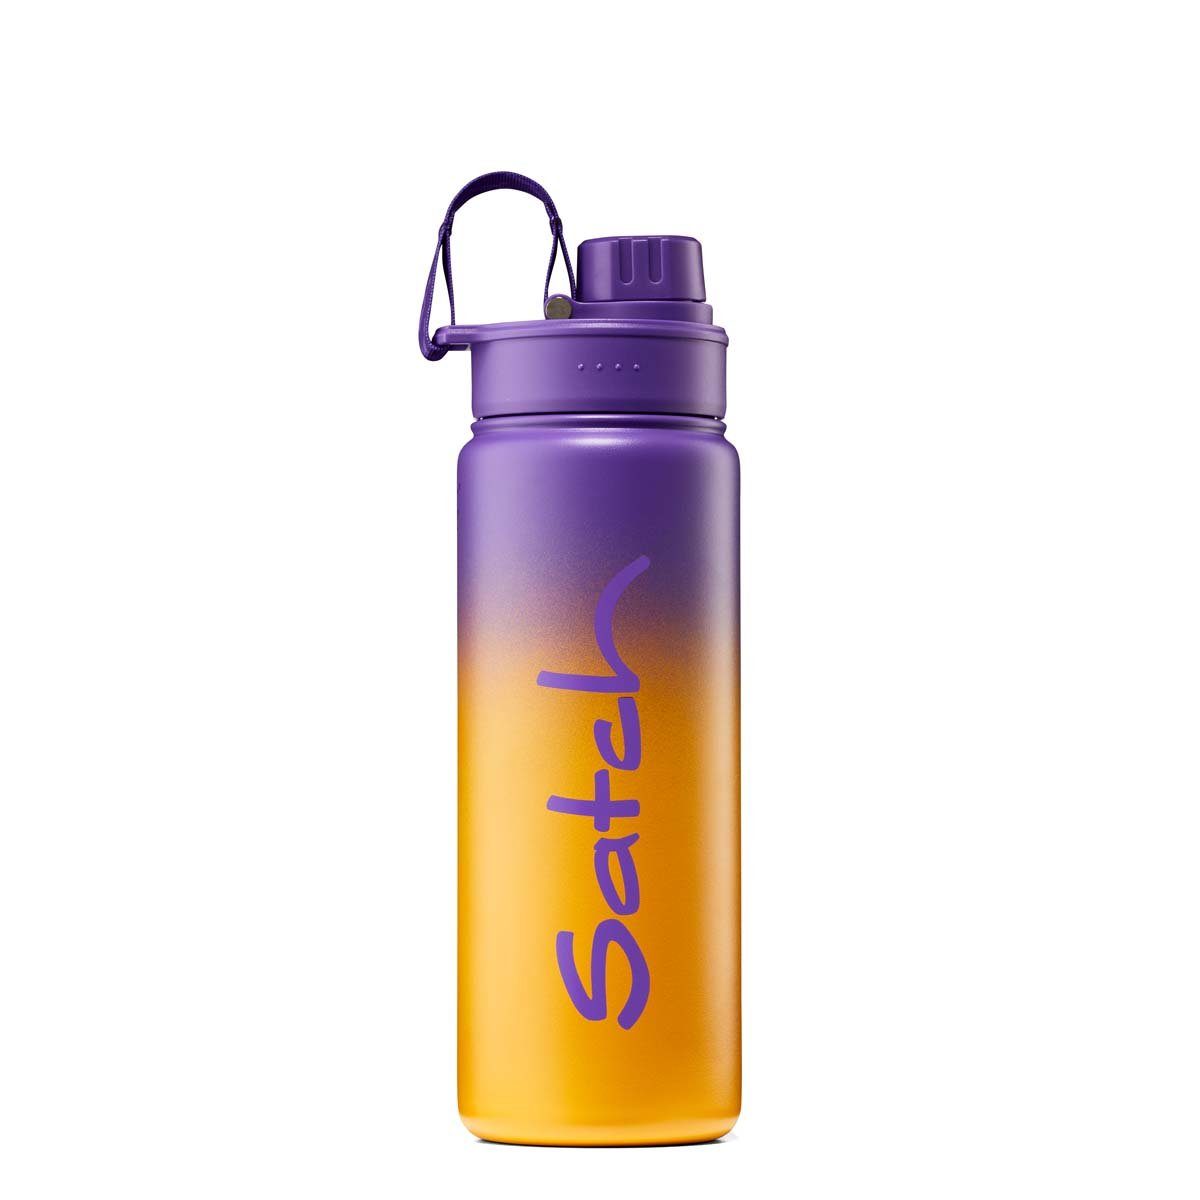 Satch Trinkflasche Edelstahl-Trinkflasche, BPA-frei 01017-90245-10 Graffiti Purple